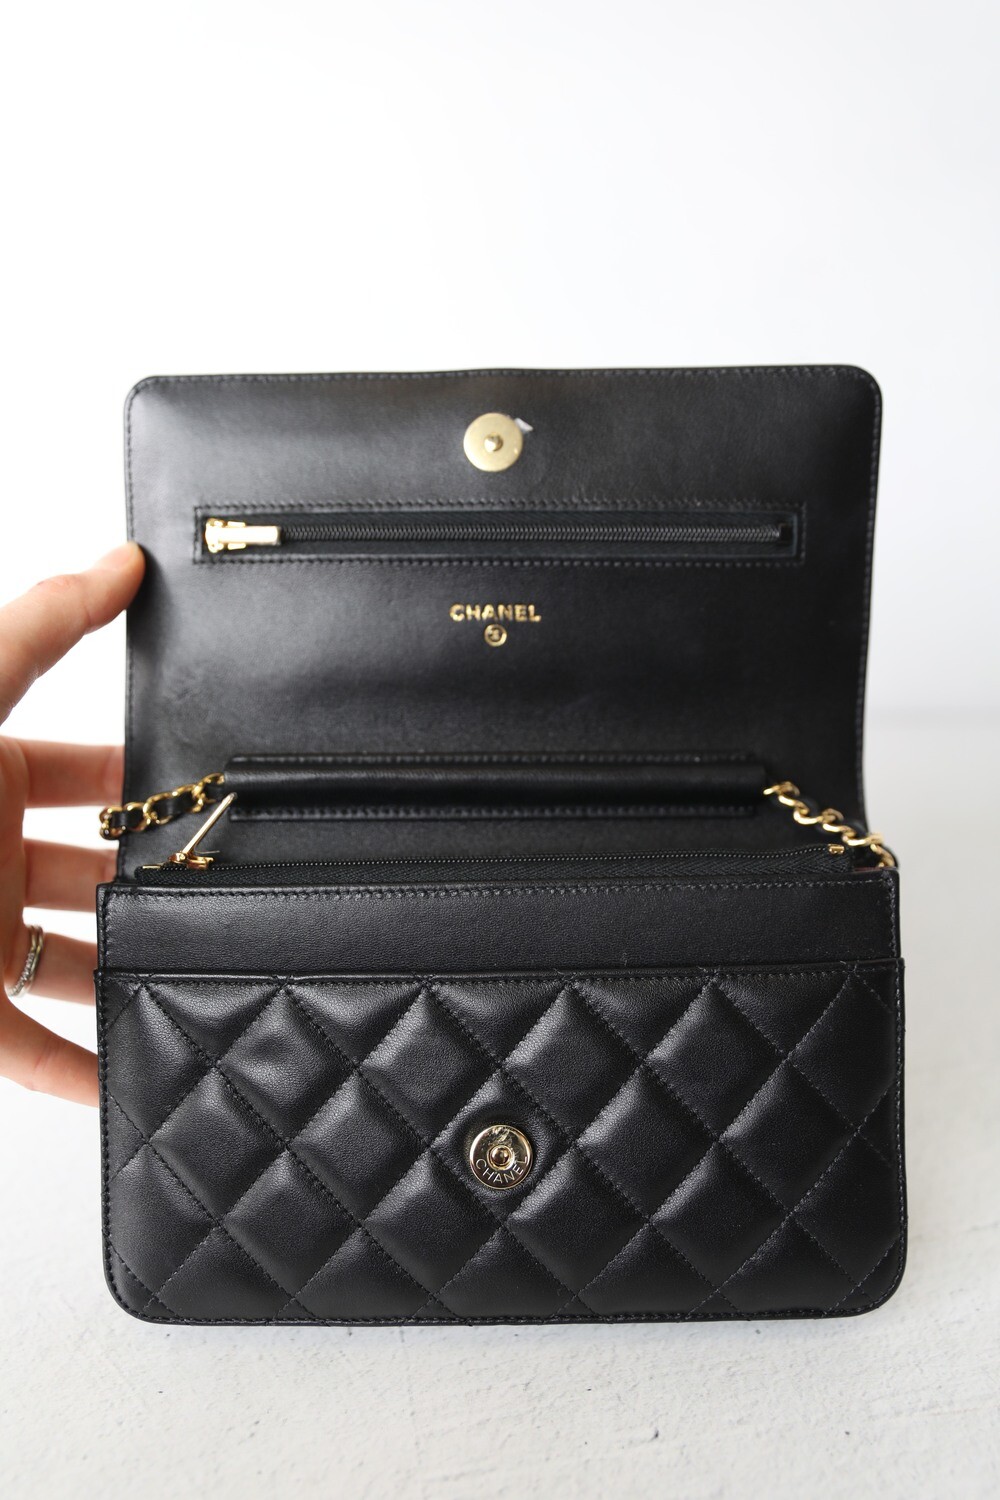 chanel wallet bag black